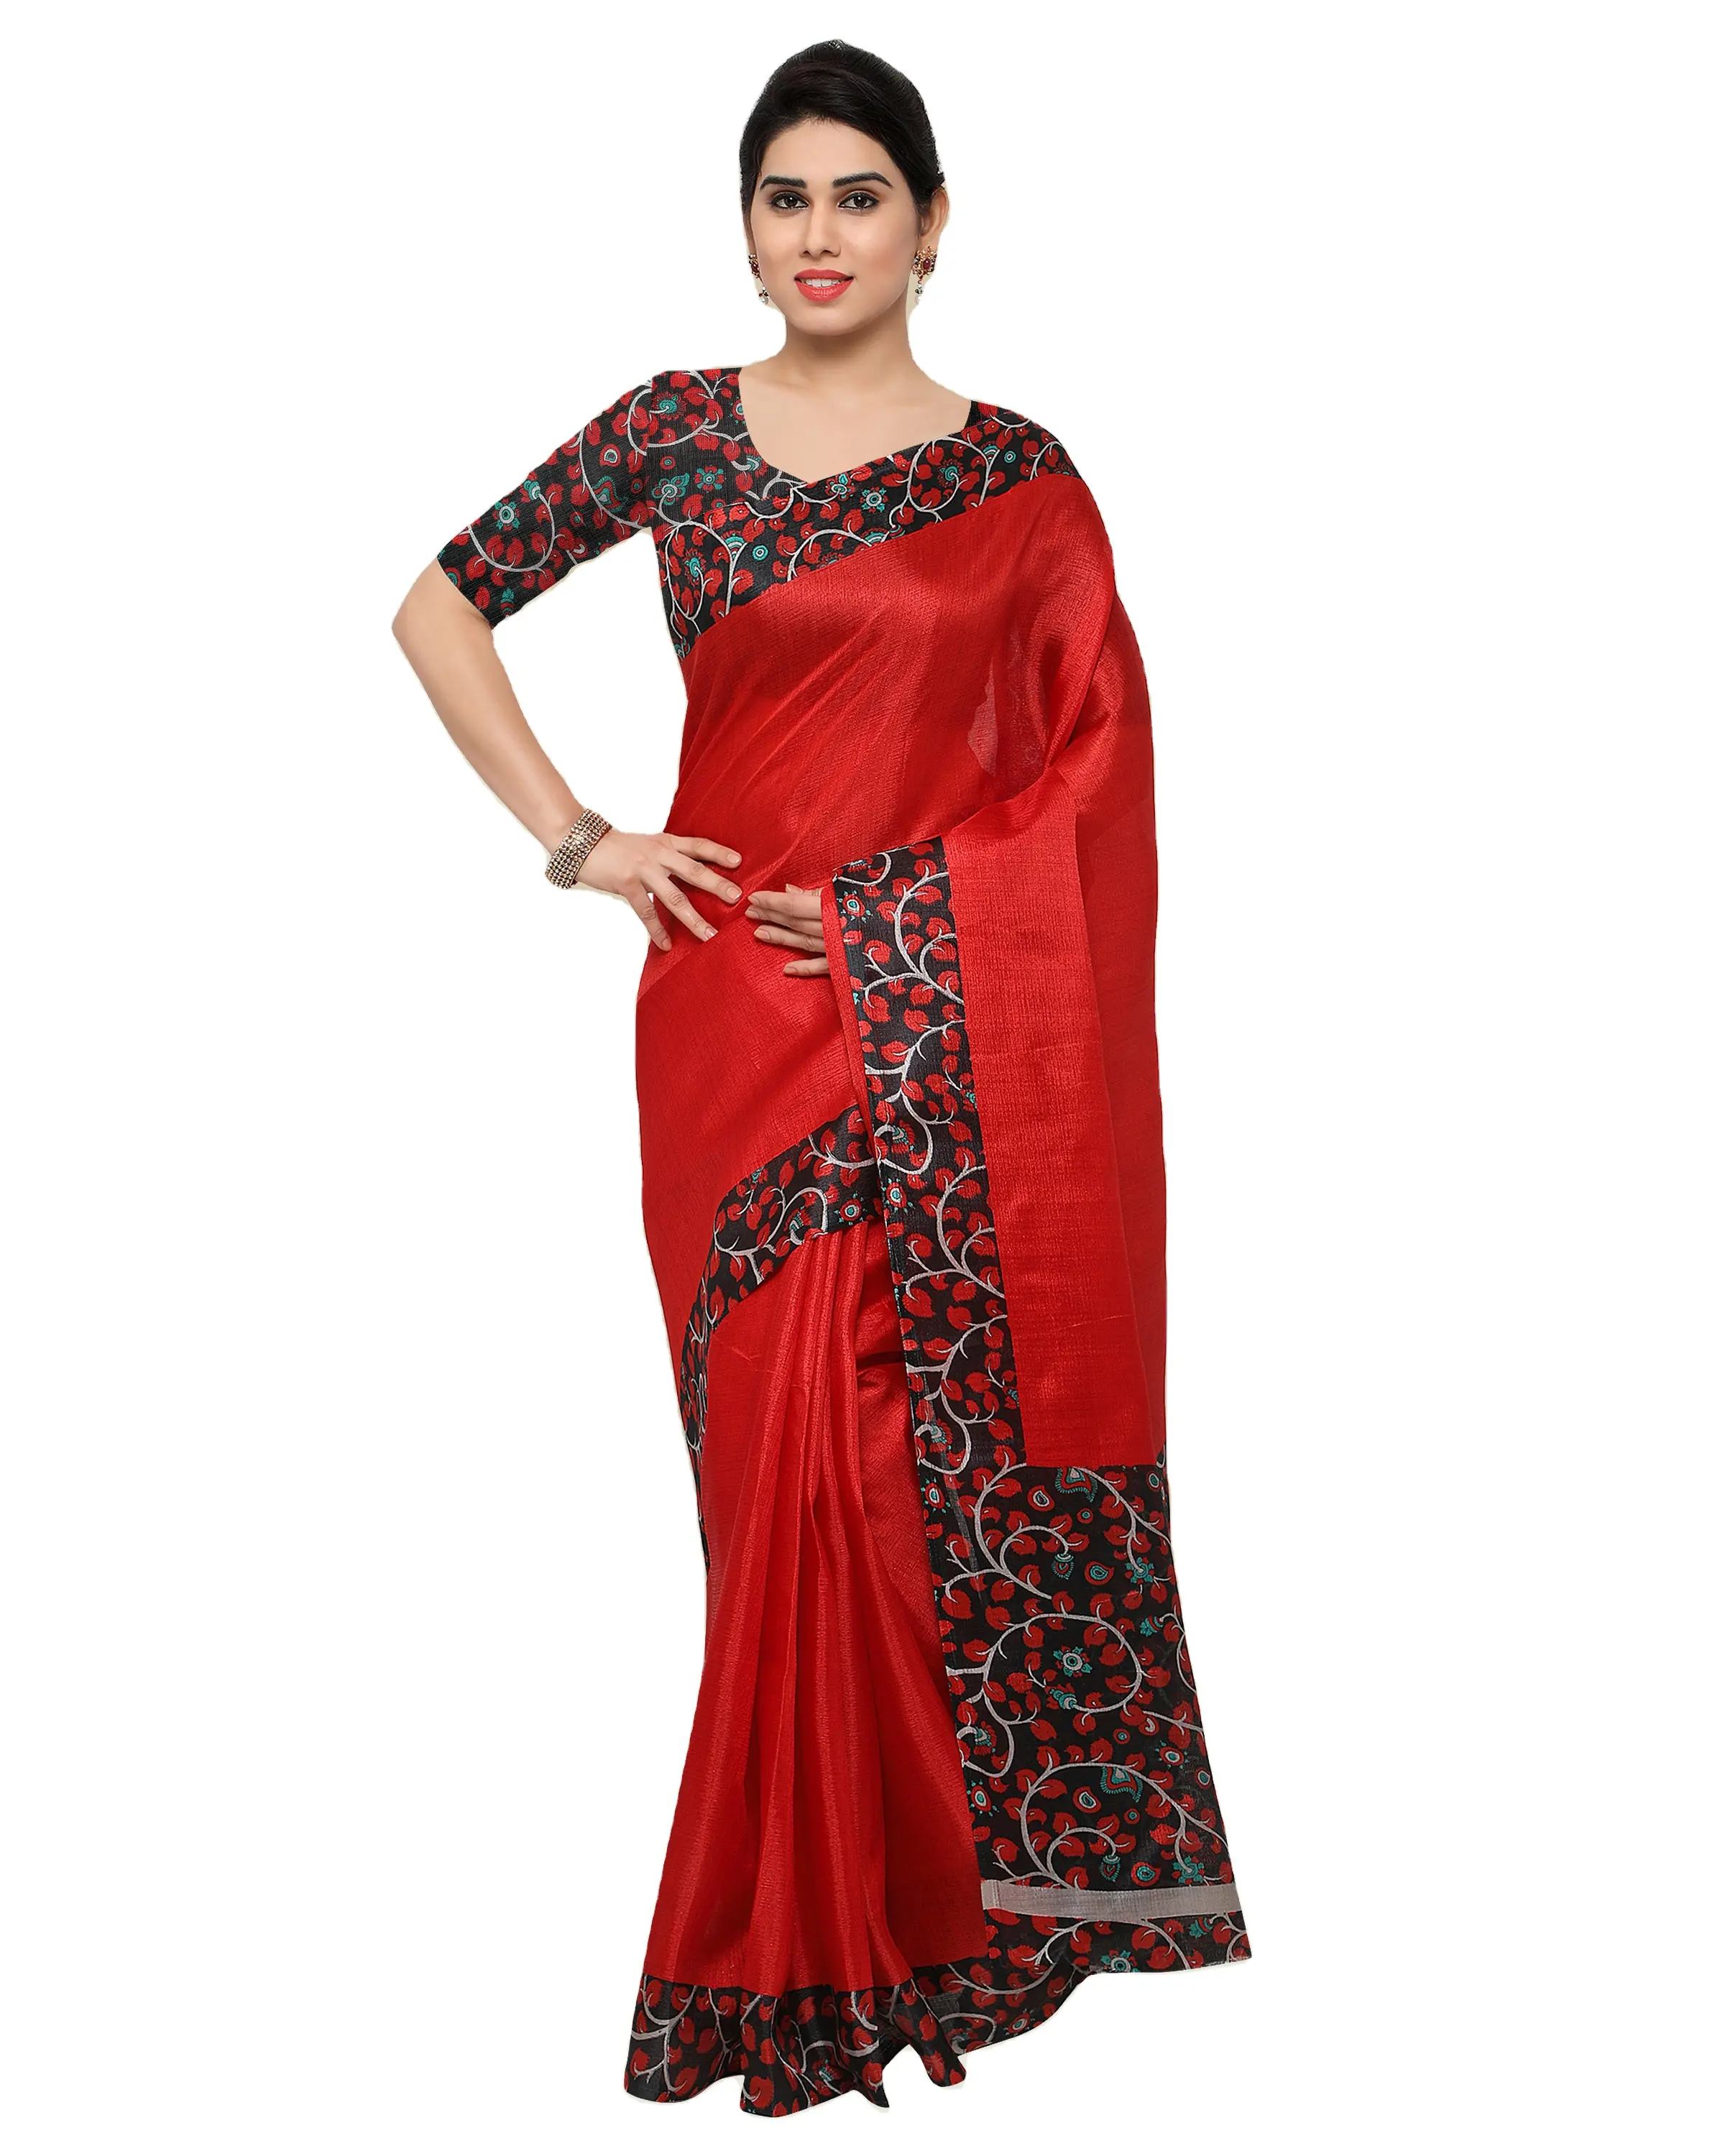 Nuevo Sari elegante de moda para mujer de calidad superior para ropa de fiesta disponible a precio mayorista para exportar desde India